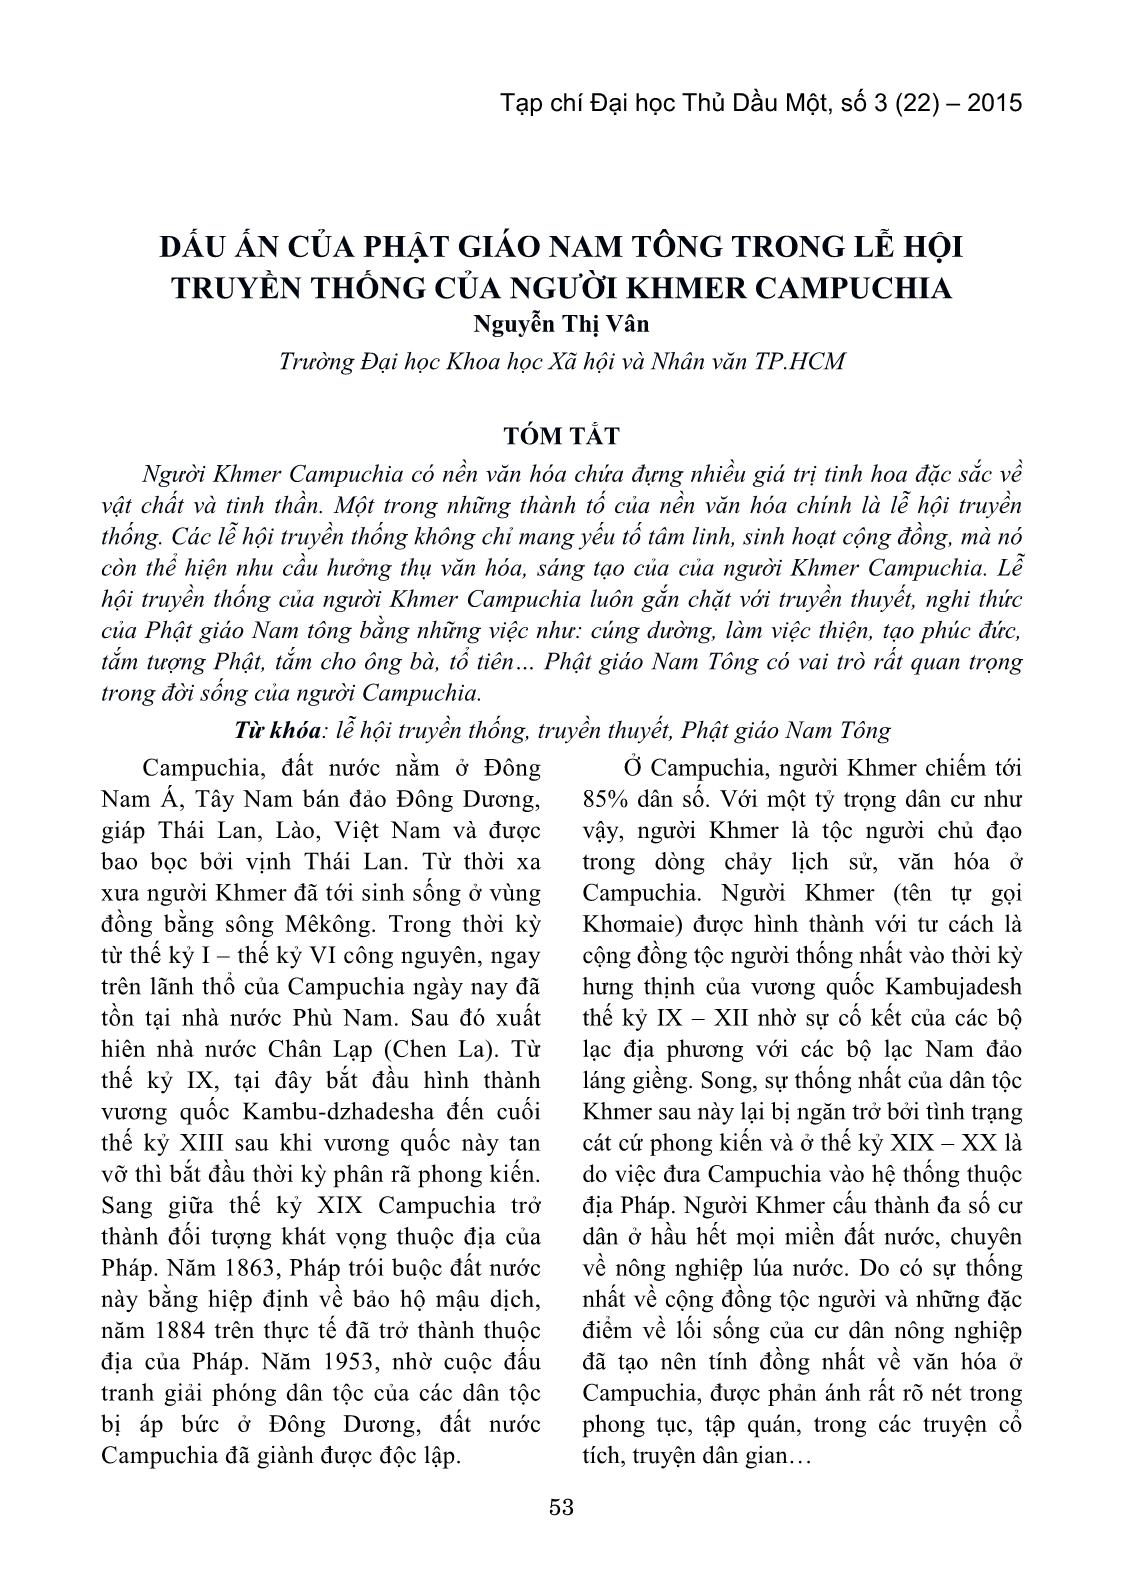 Dấu ấn của phật giáo nam tông trong lễ hội truyền thống của người Khmer Campuchia trang 1